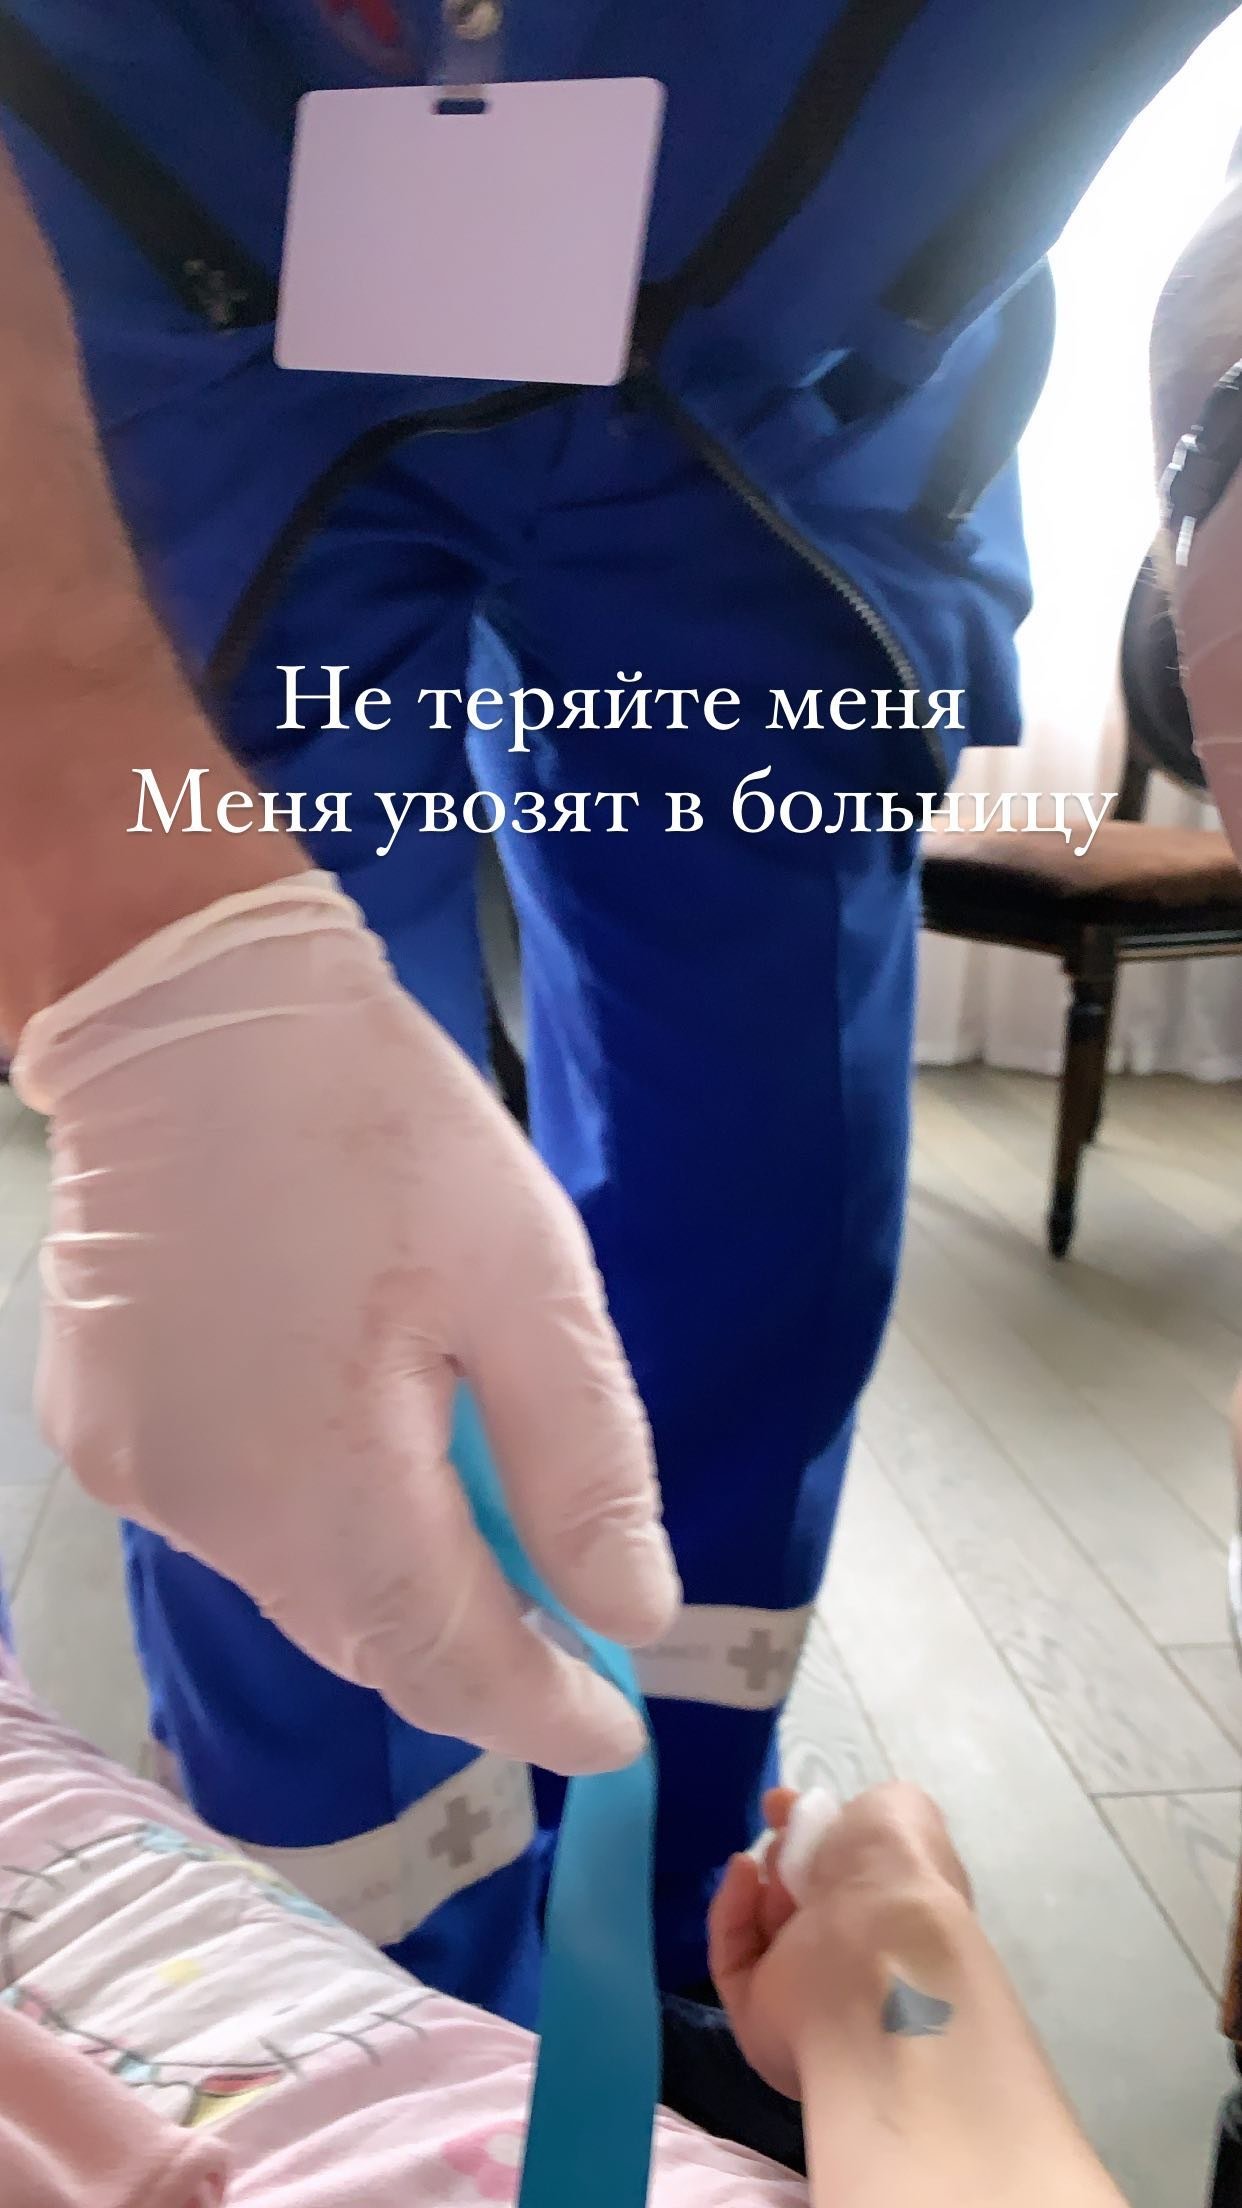 Алёну Водонаеву увезла скорая помощь в больницу